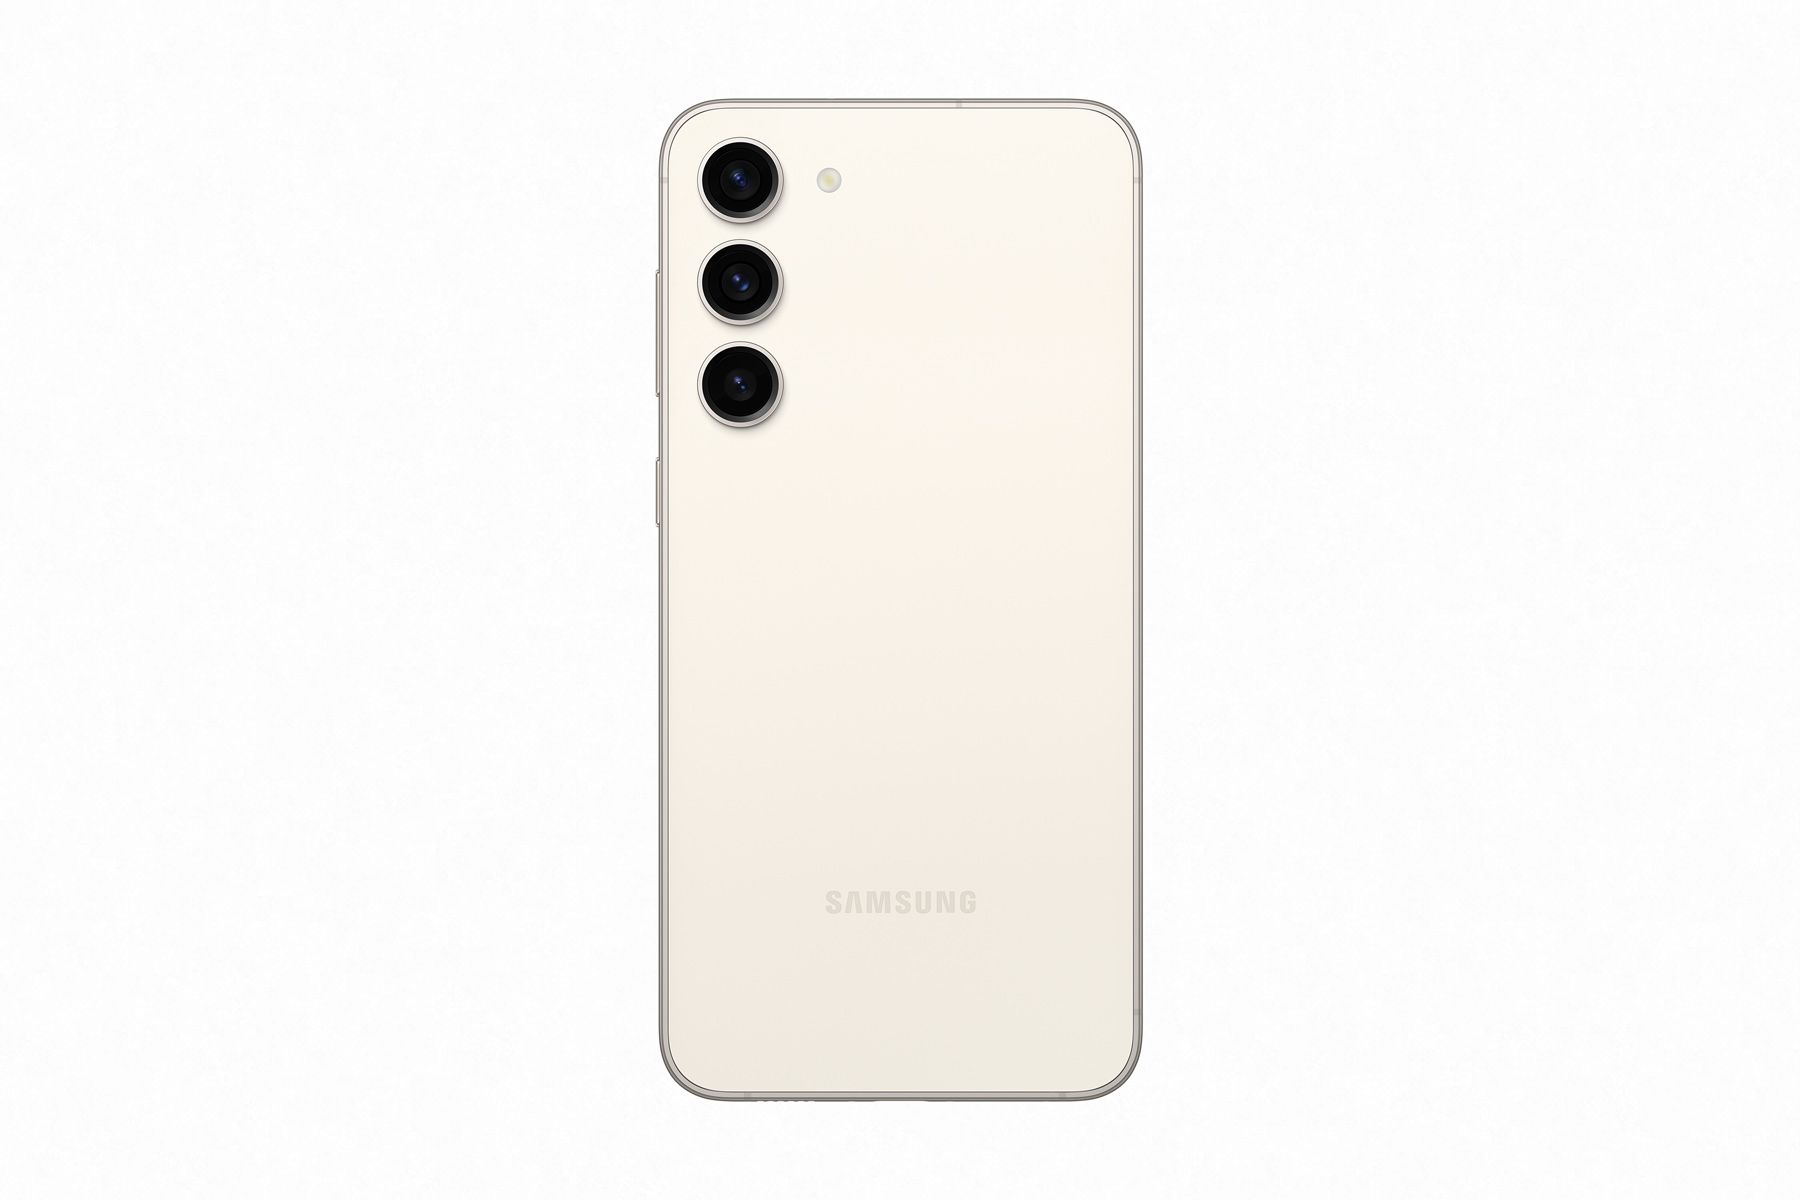 เทียบสเปค Samsung Galaxy S23, S23+, S23 Ultra ต่างกันอย่างไร ซื้อรุ่นไหนดี